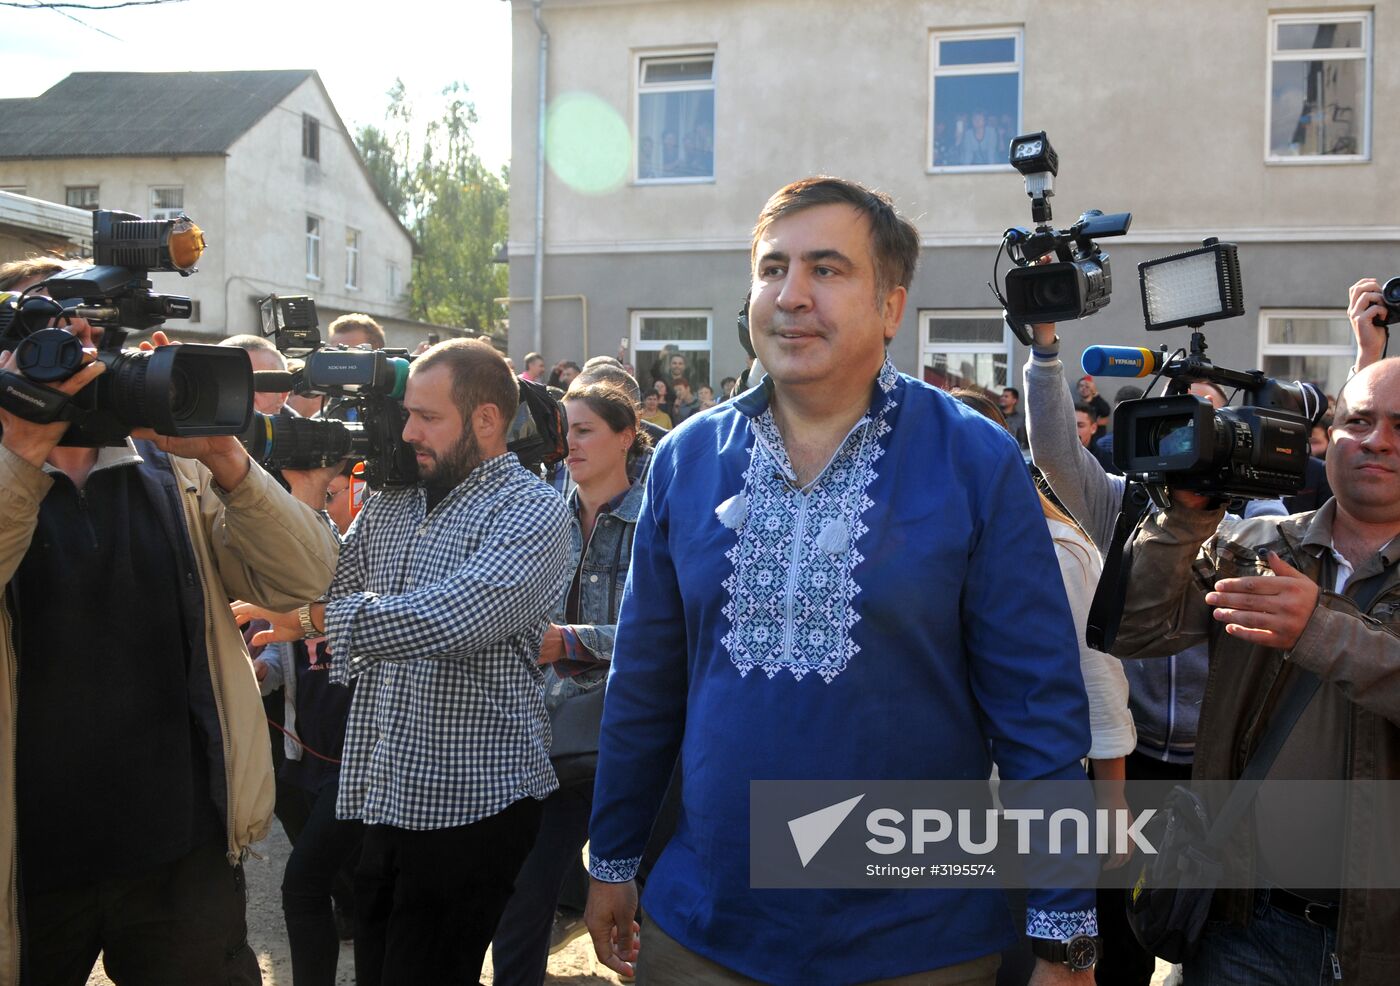 Mikheil Saakashvili stands trial in Ukraine's Lvov Region